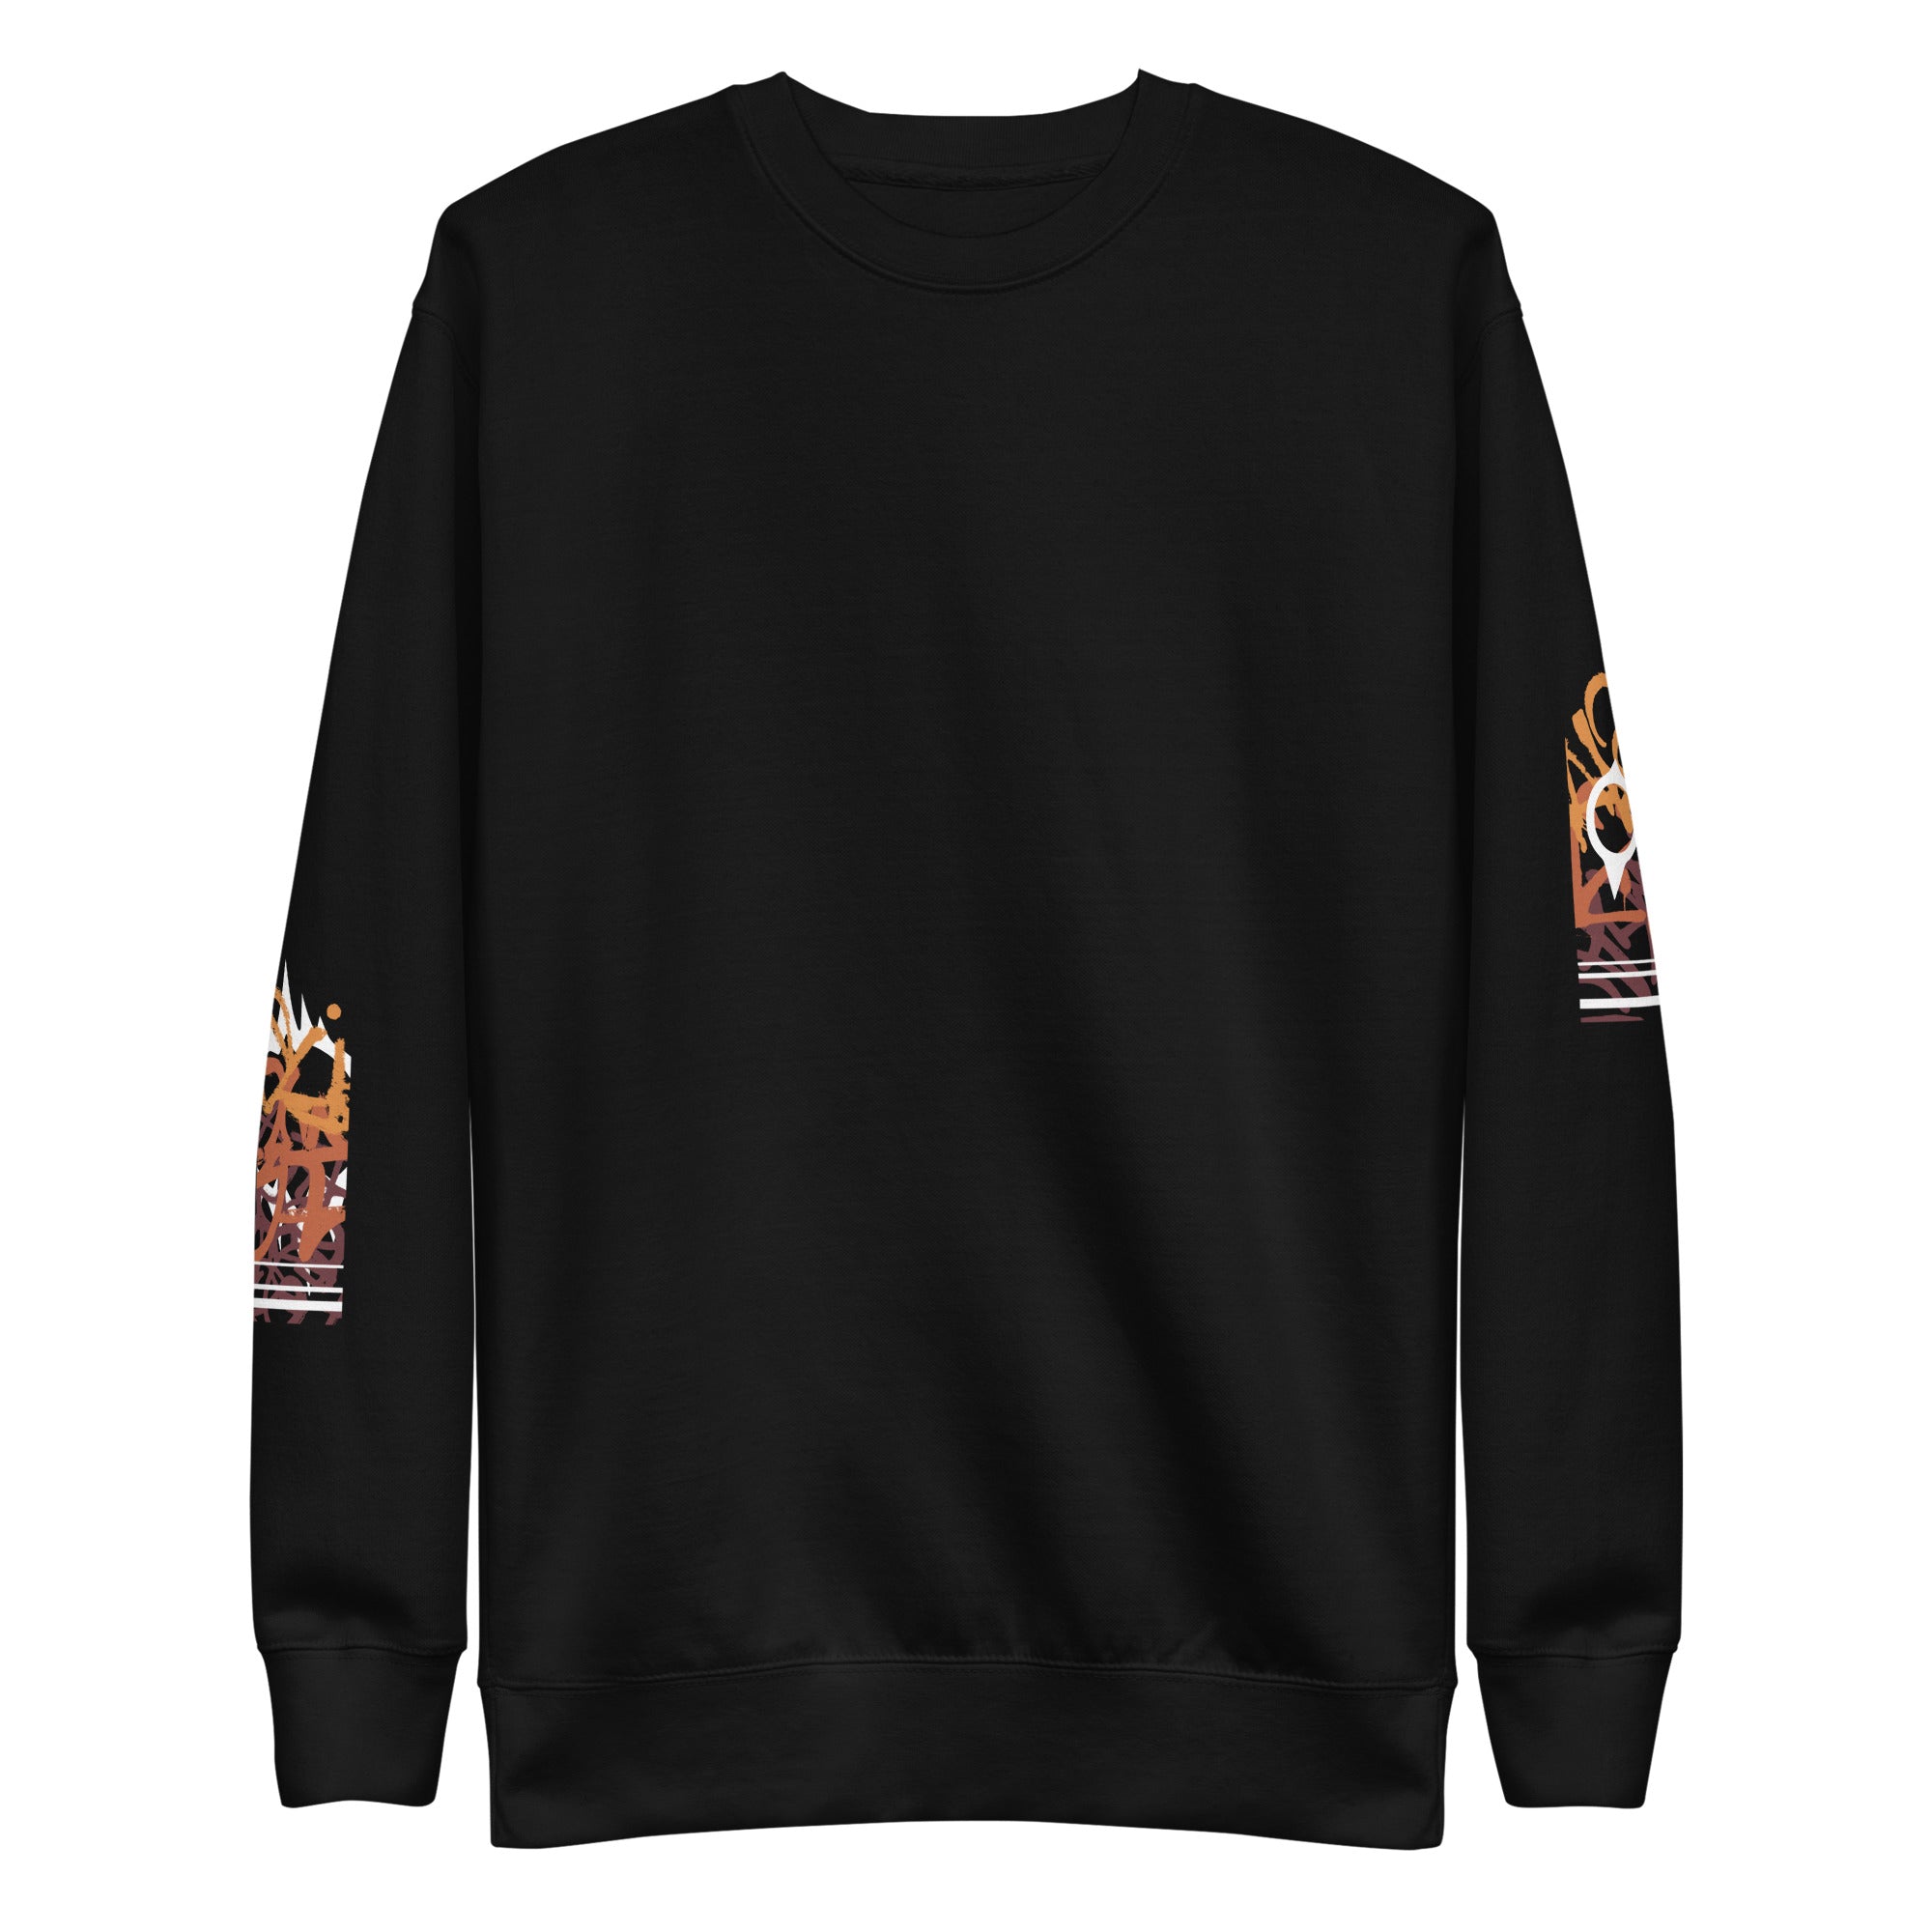 FIREWORK SERENADE • sweatshirt - Jackler - anime-inspired streetwear - anime clothing